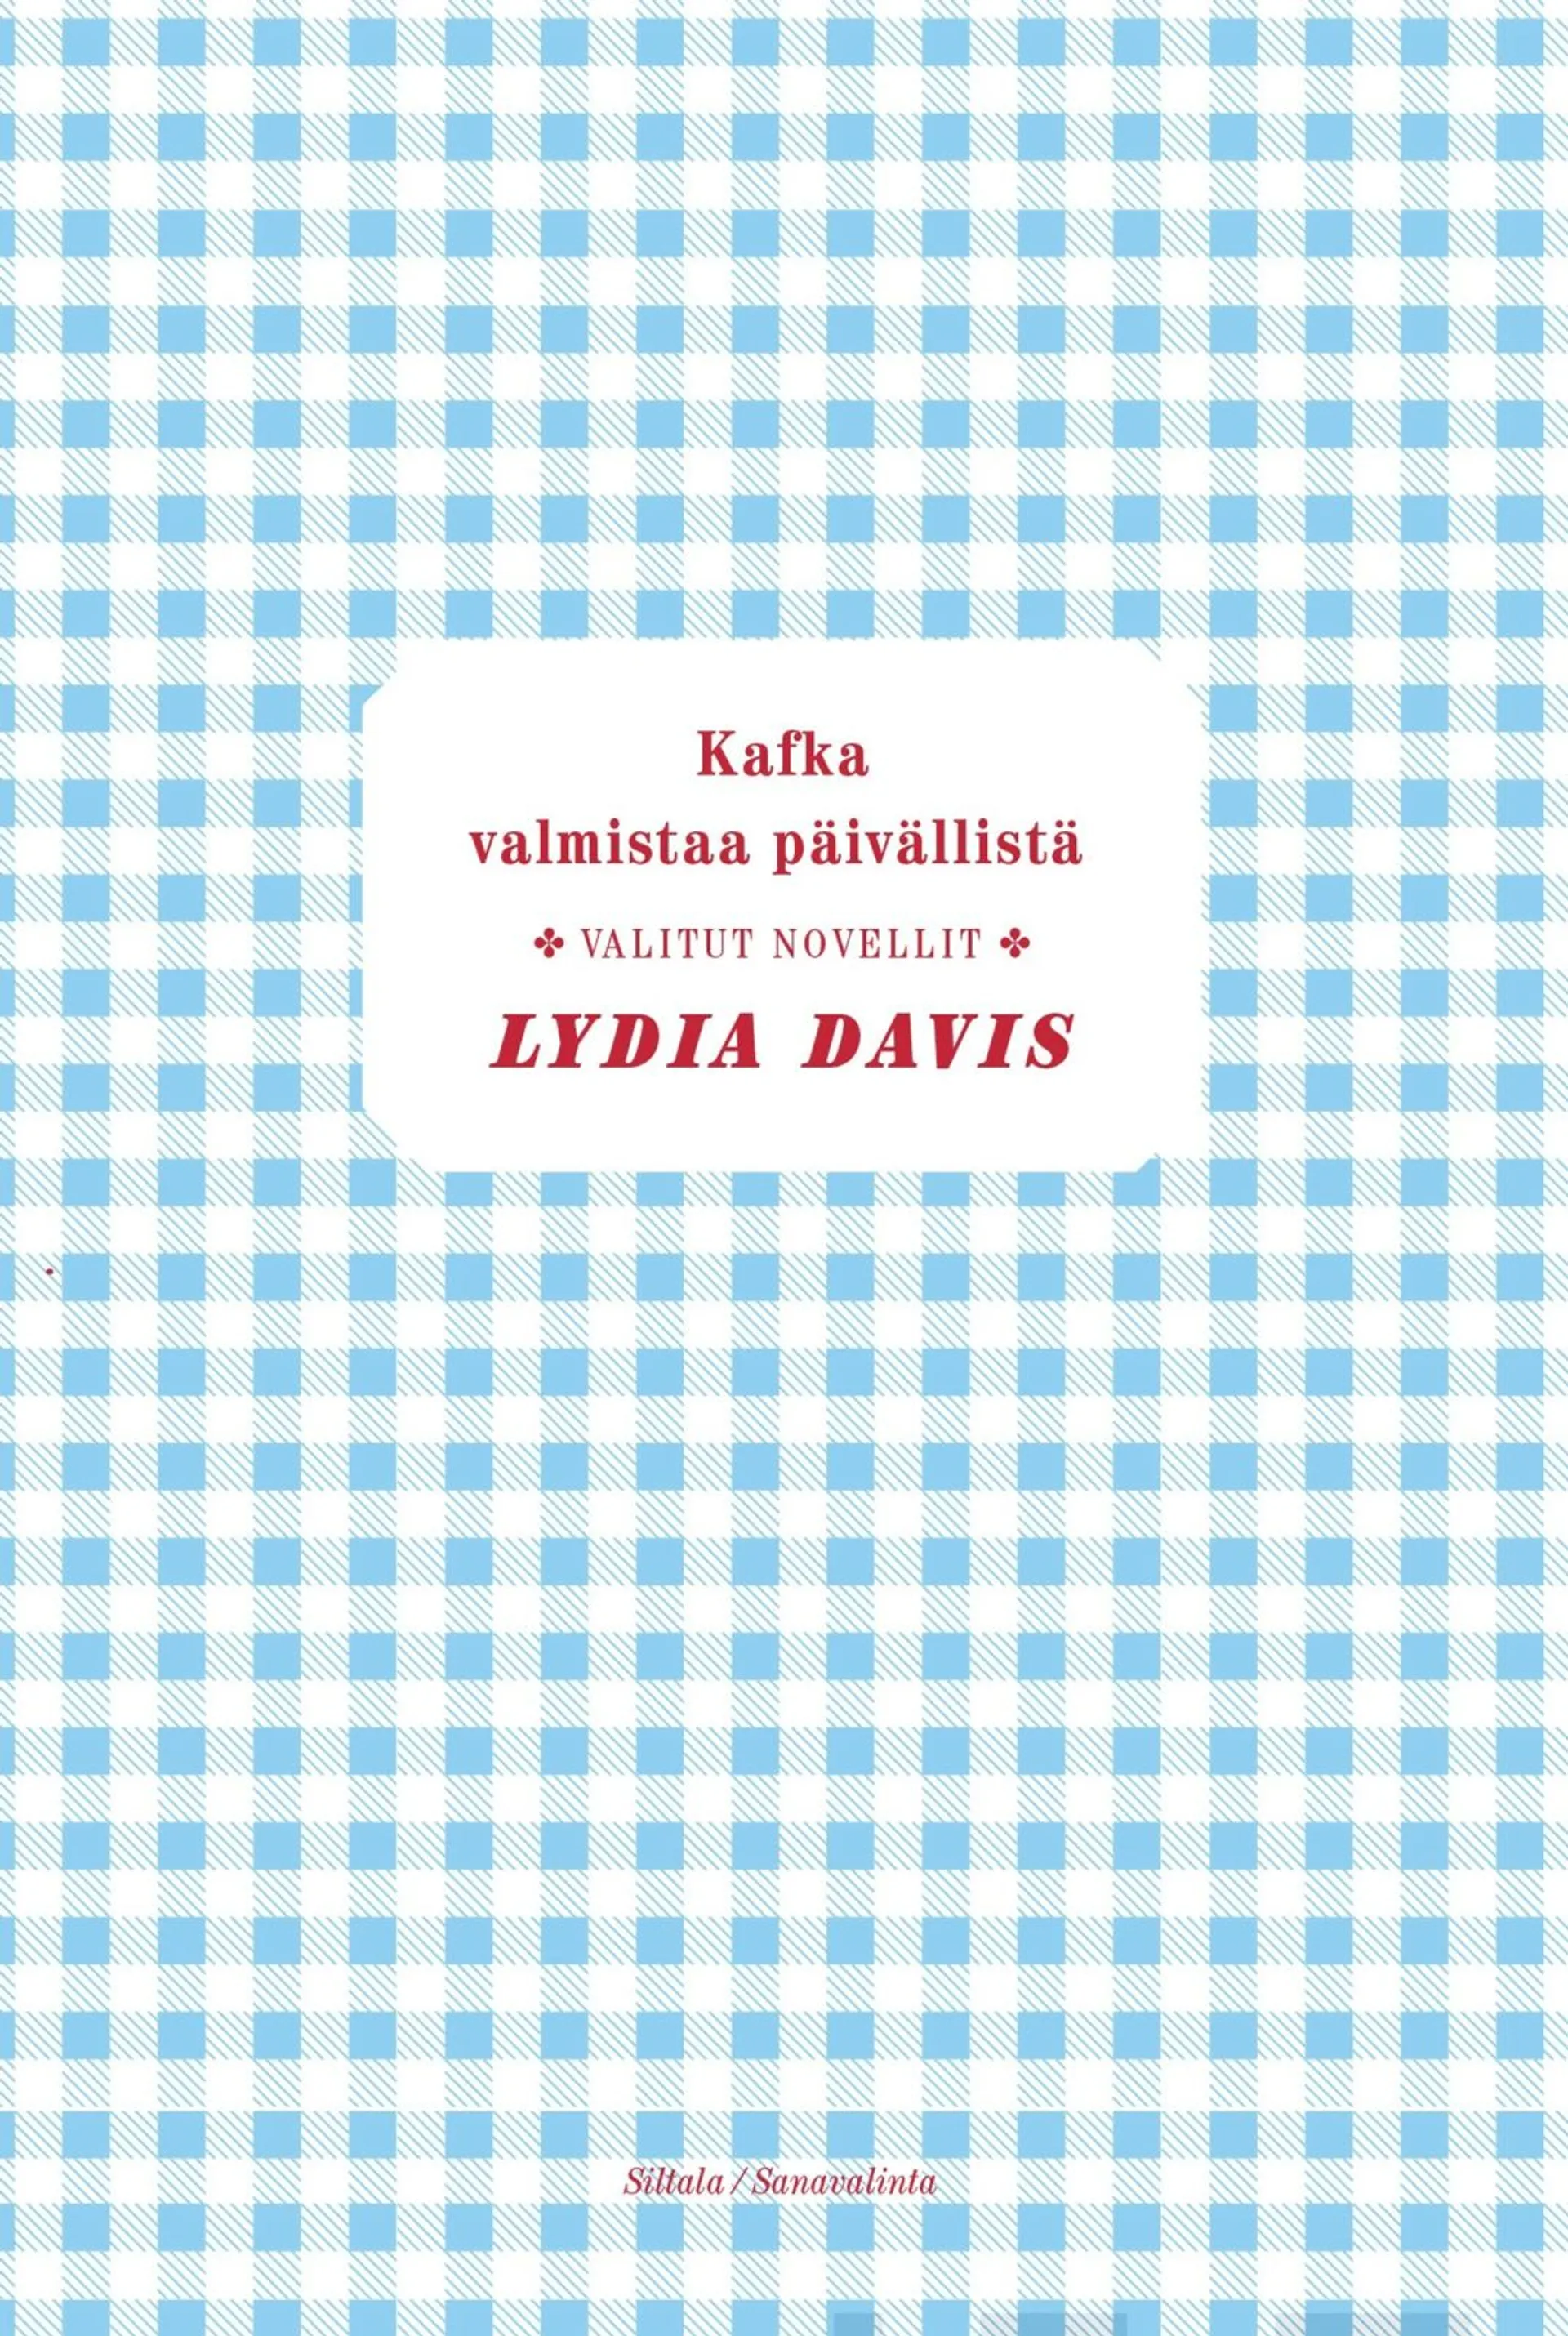 Davis, Kafka valmistaa päivällistä